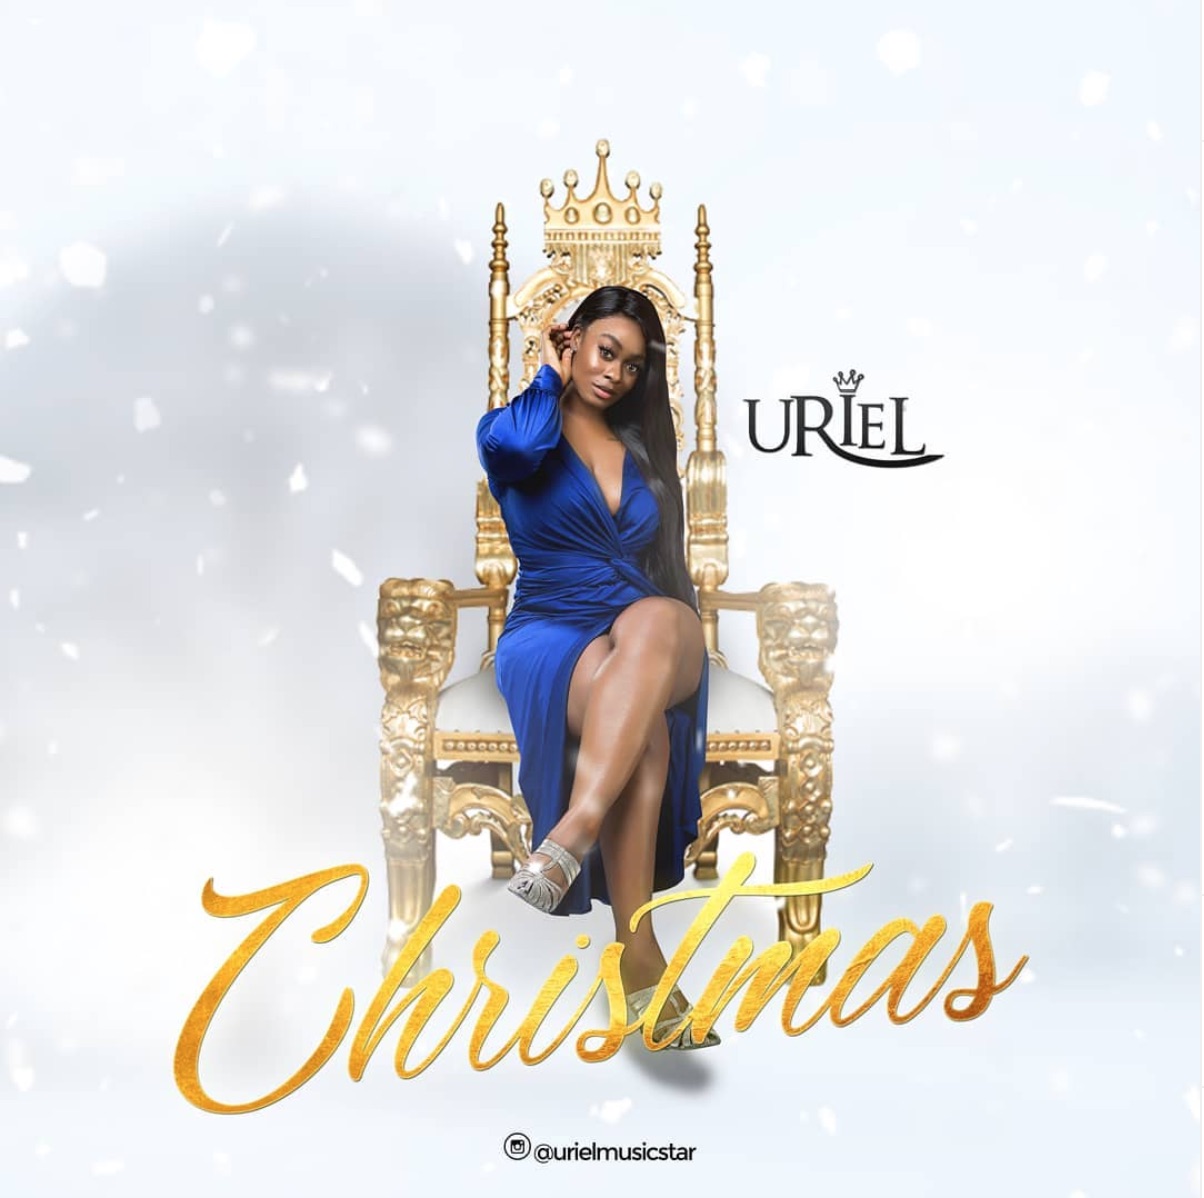 Uriel Christmas